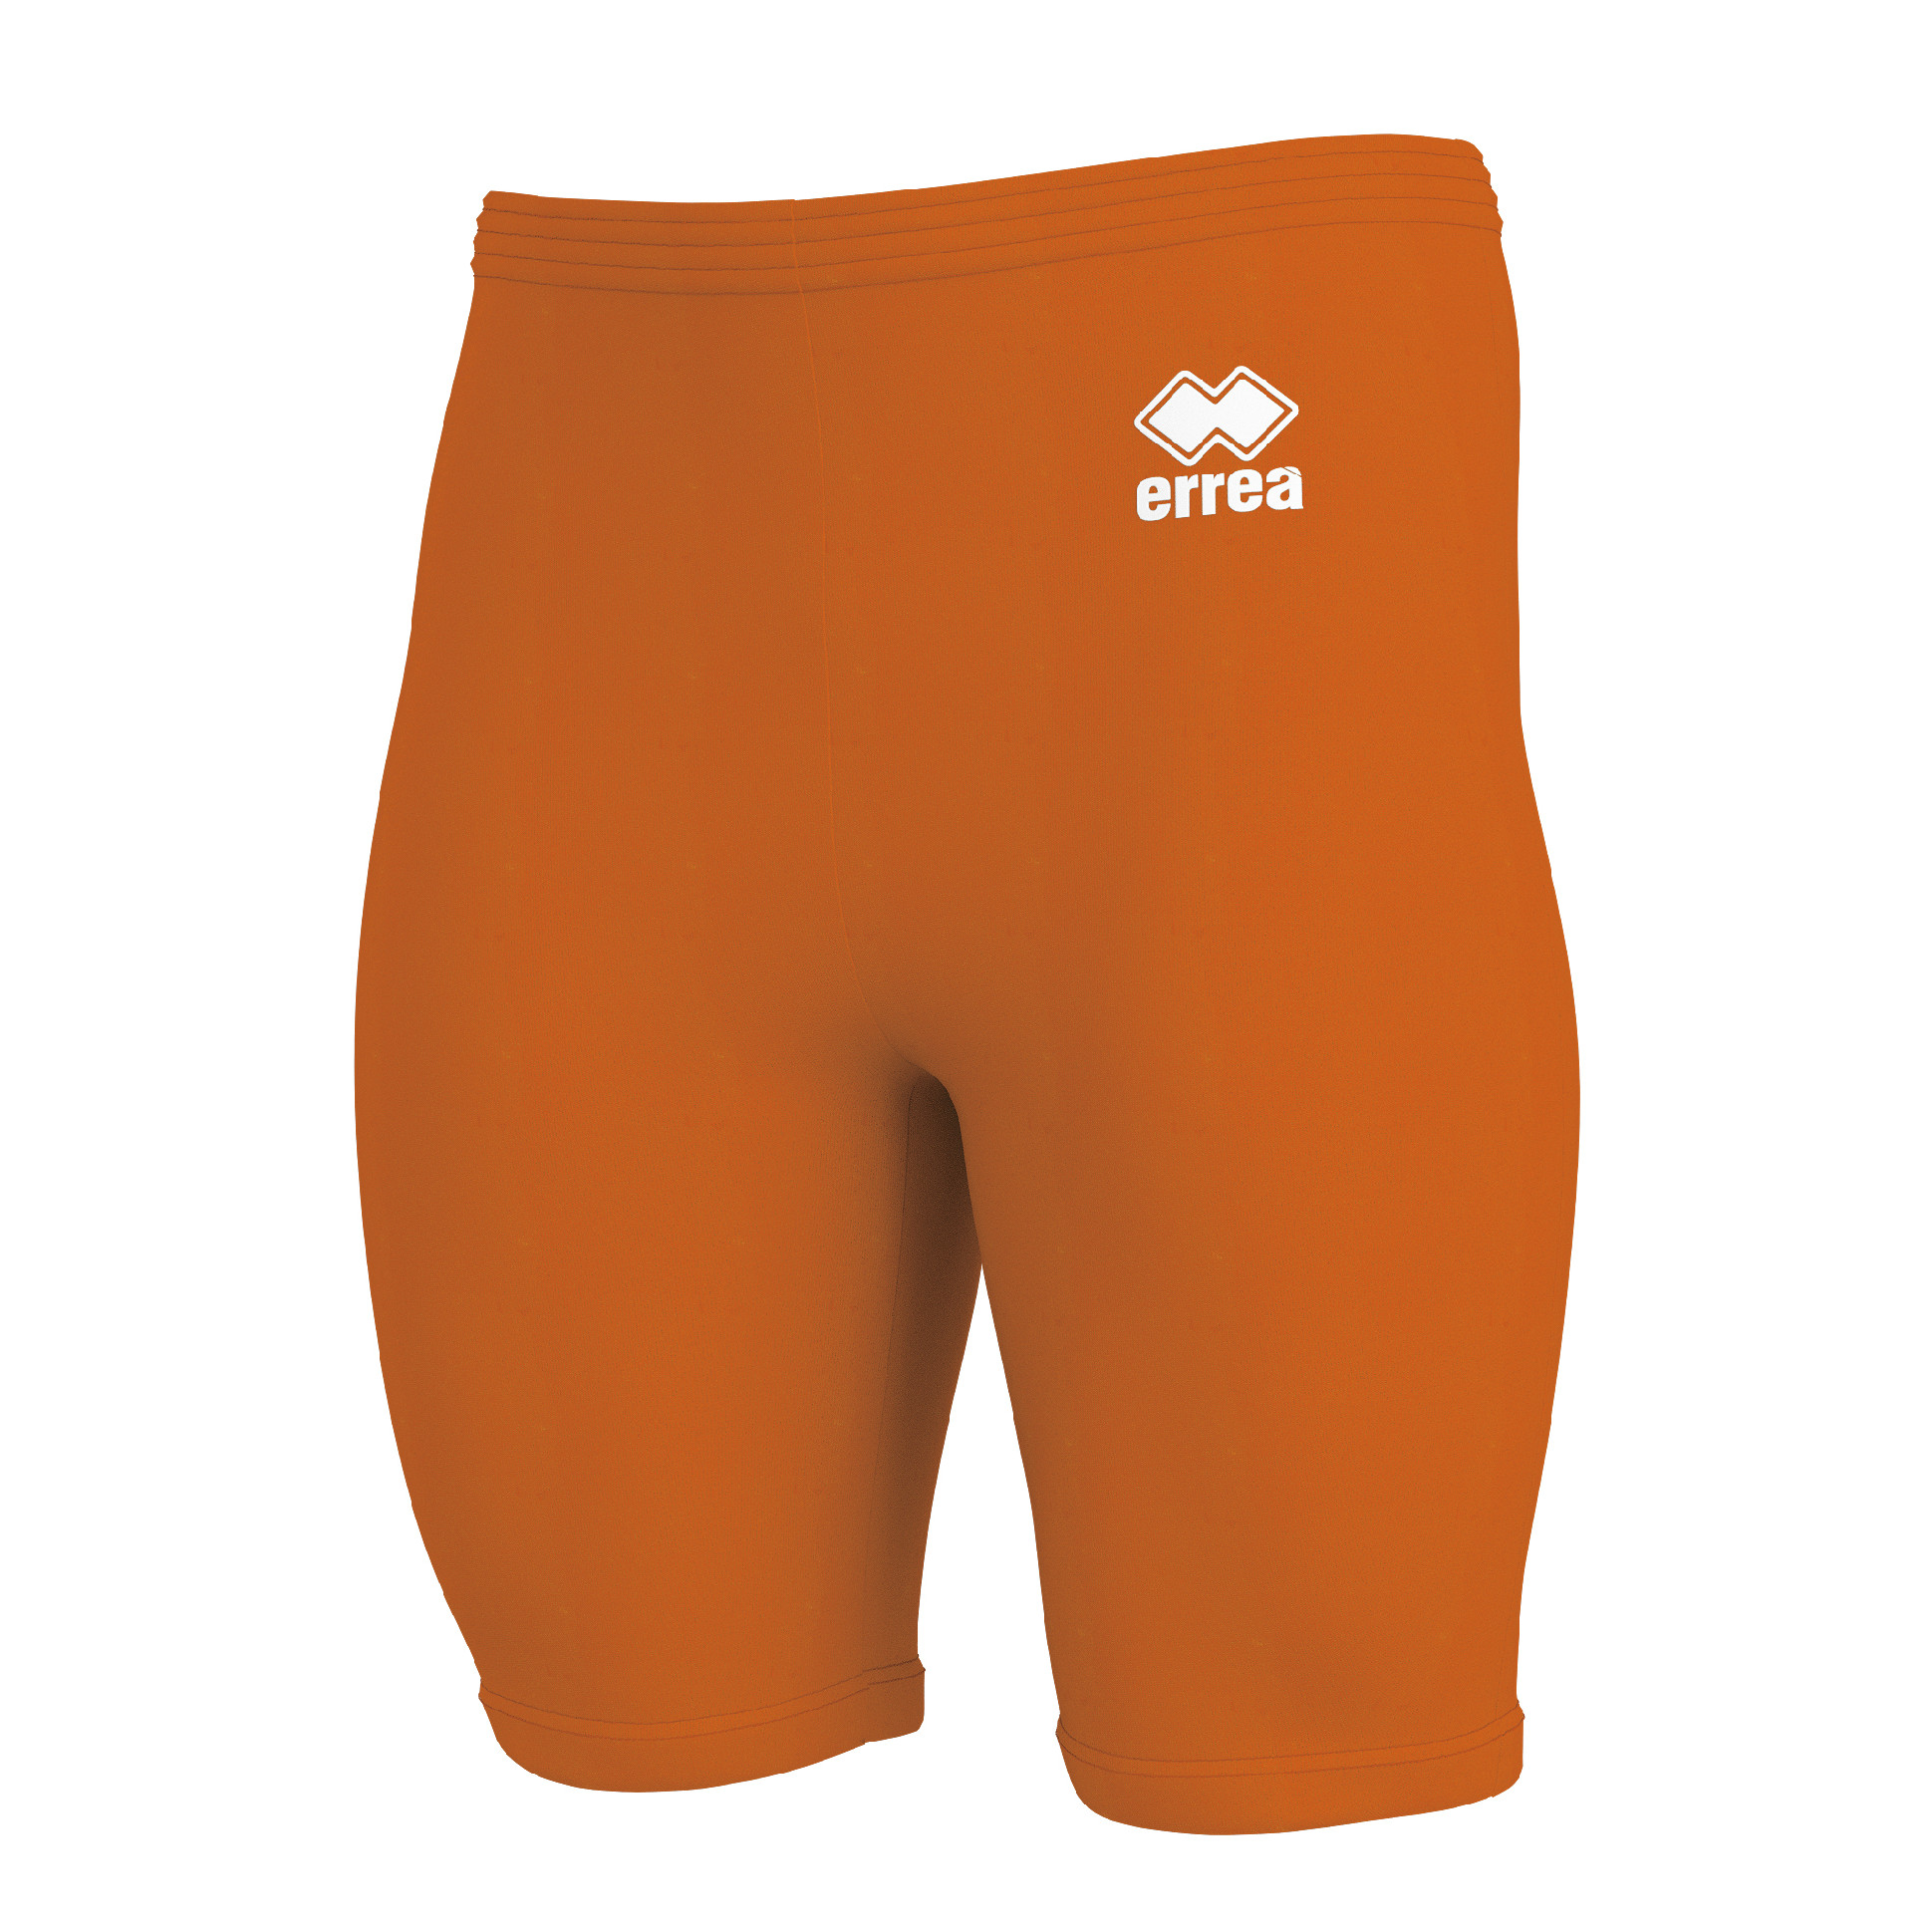 ERREA spodní kompresní šortky DAWE BARVA: oranžová, Velikost: XXL / XXXL